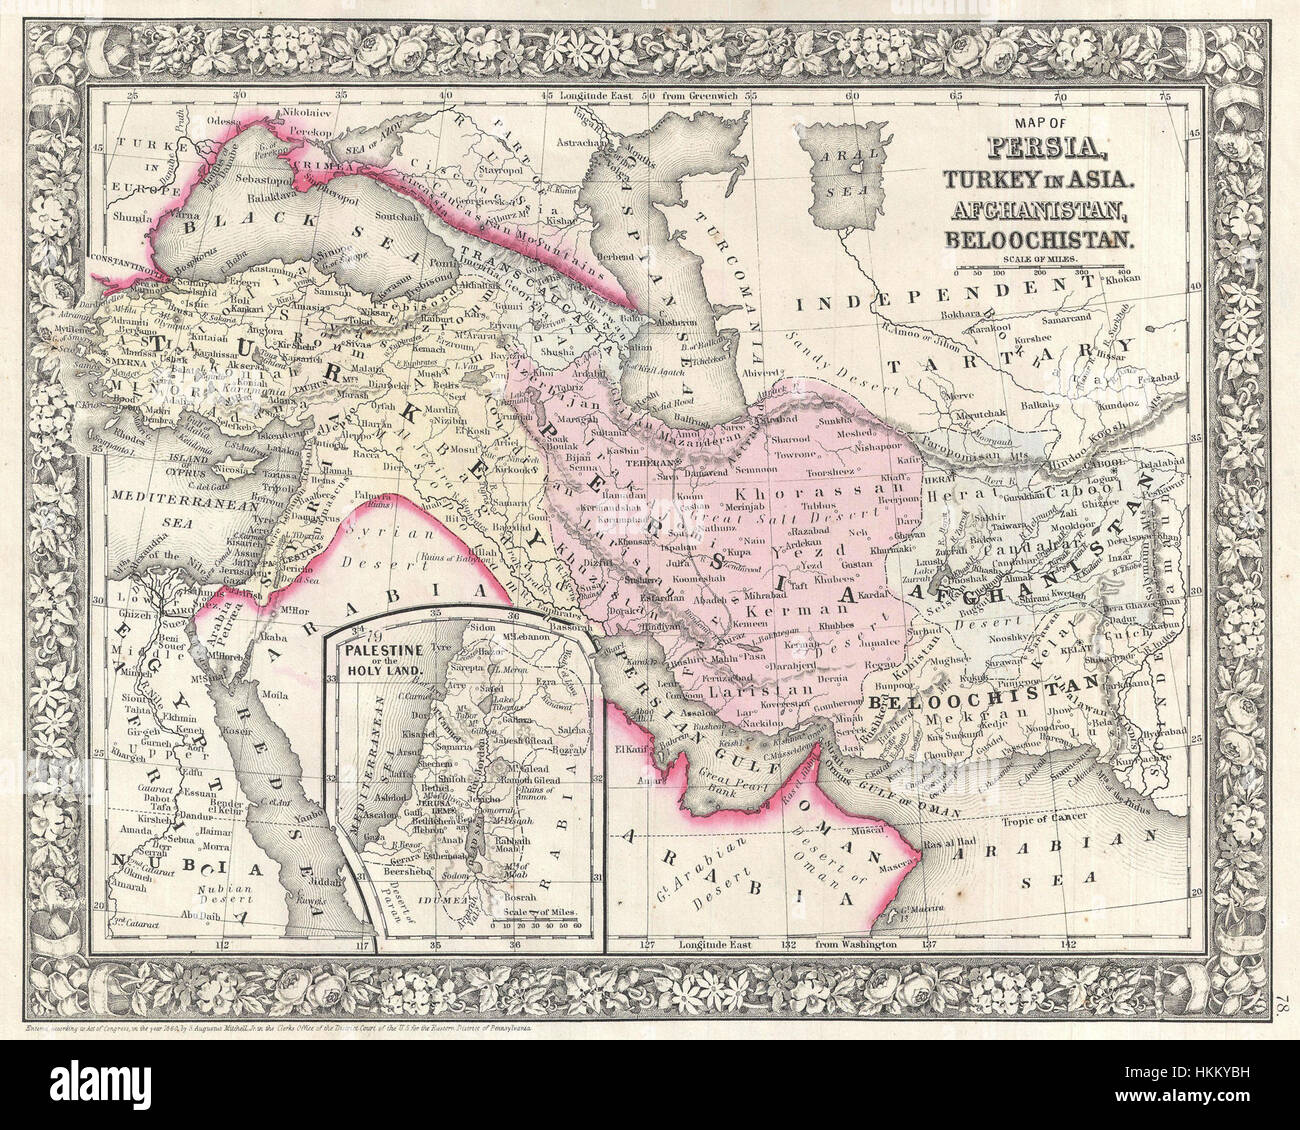 1866 Mitchell-Karte von Persien, der Türkei und Afghanistan (Iran, Irak) - Geographicus - PersiaAfghanistan-Mitchell-1866 Stockfoto